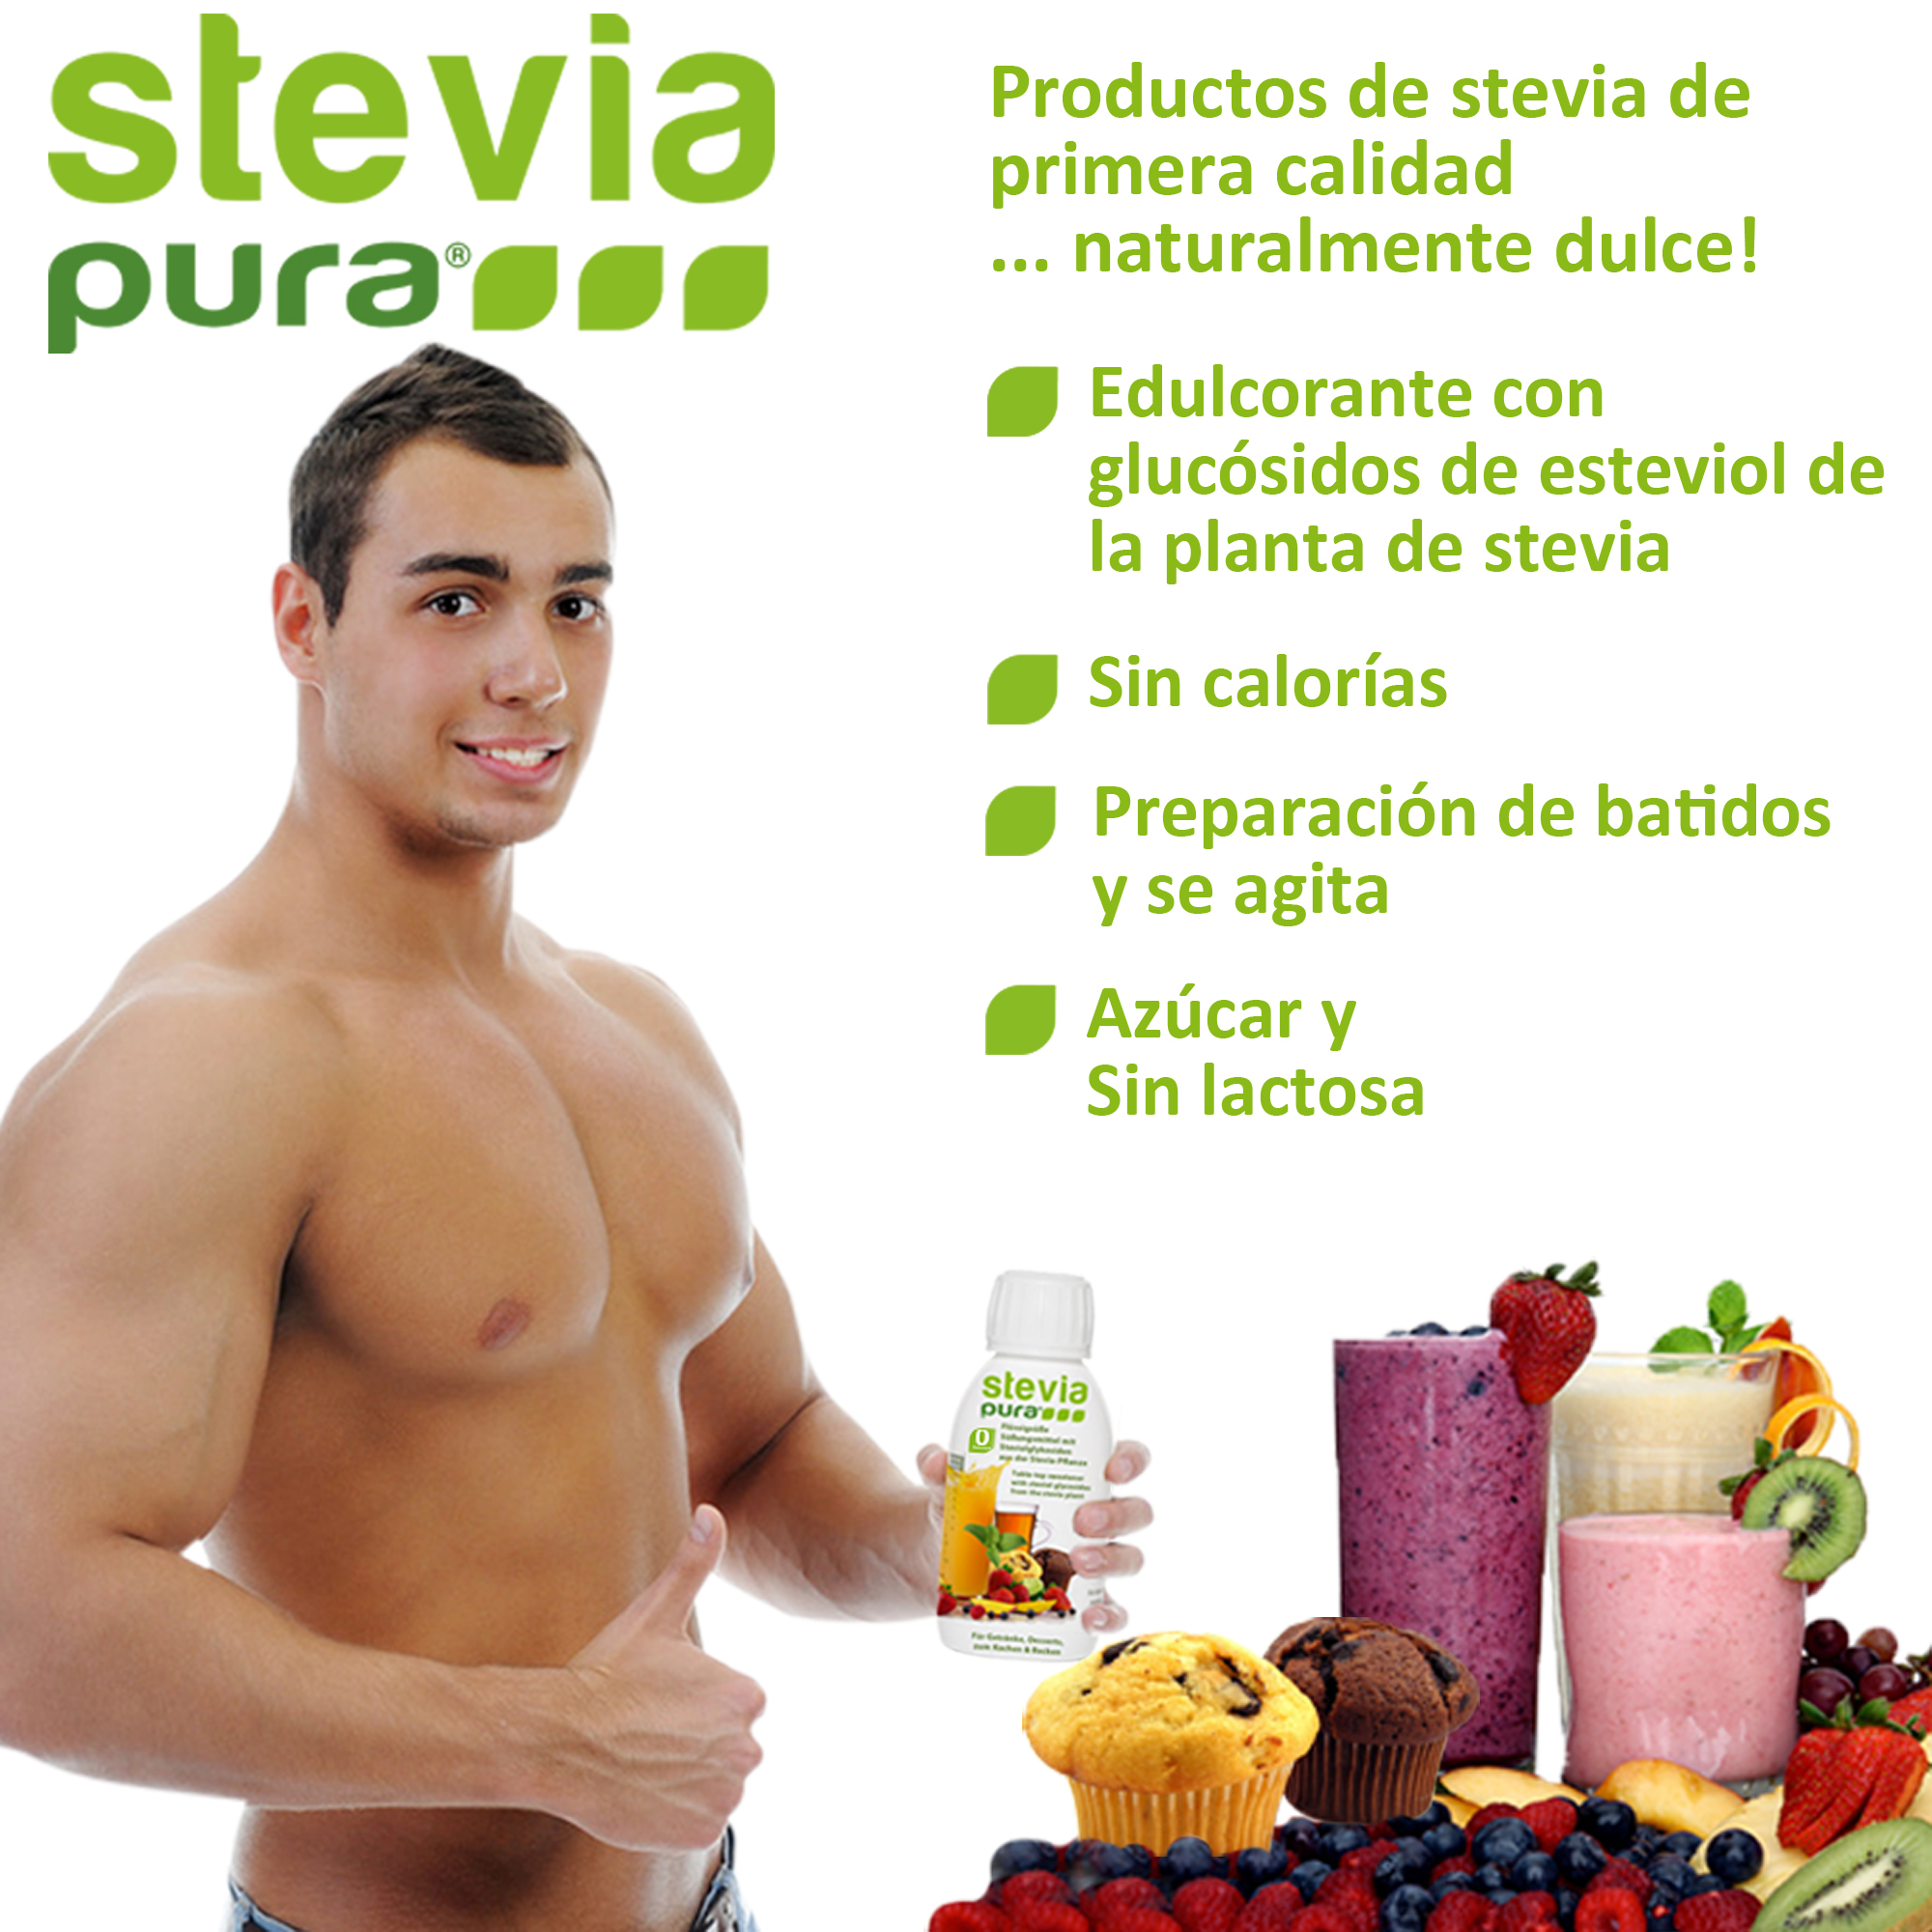 El uso de Stevia líquida para que los deportistas endulcen las bebidas energéticas y los batidos de proteínas.